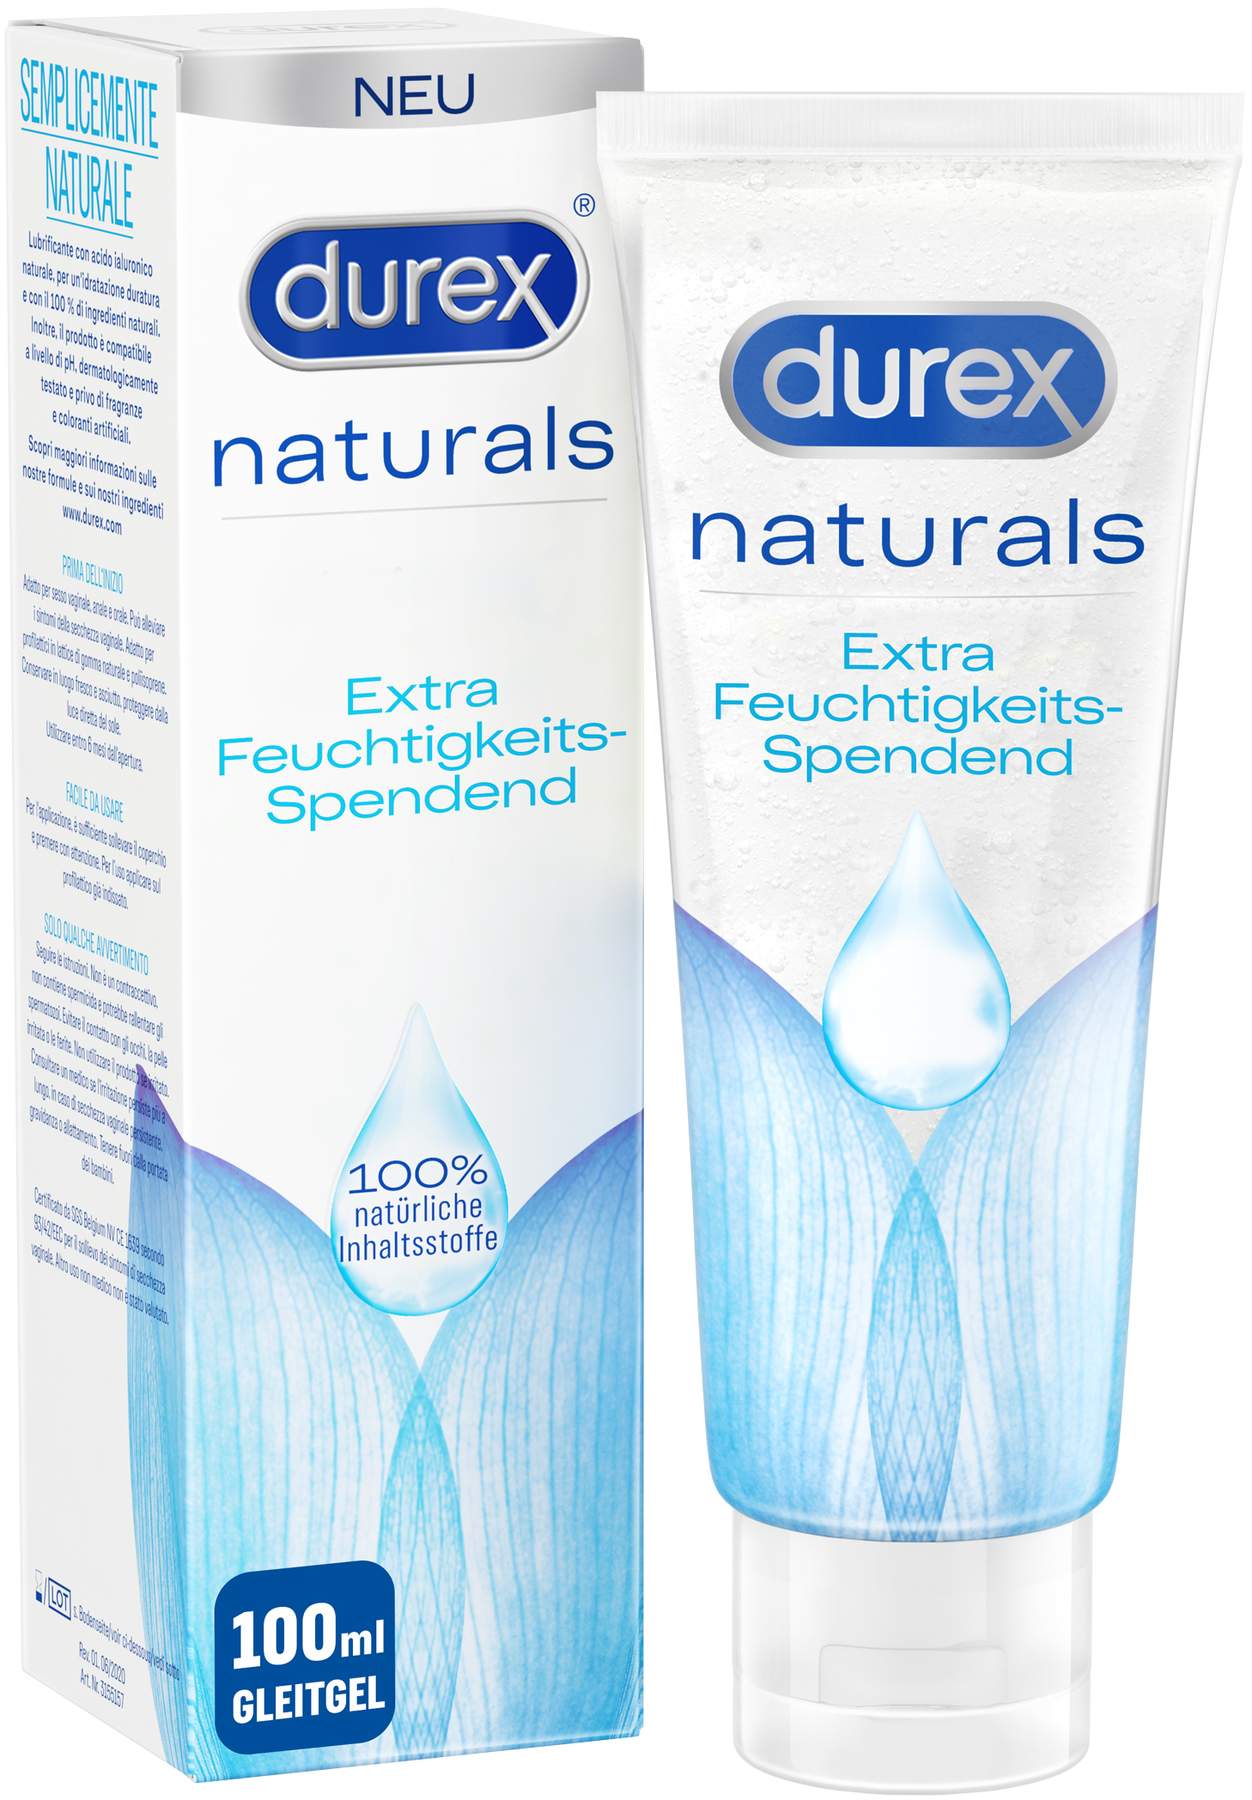 Durex Naturals Gleitgel extra feuchtigkeitsspendend 100 ml kaufen